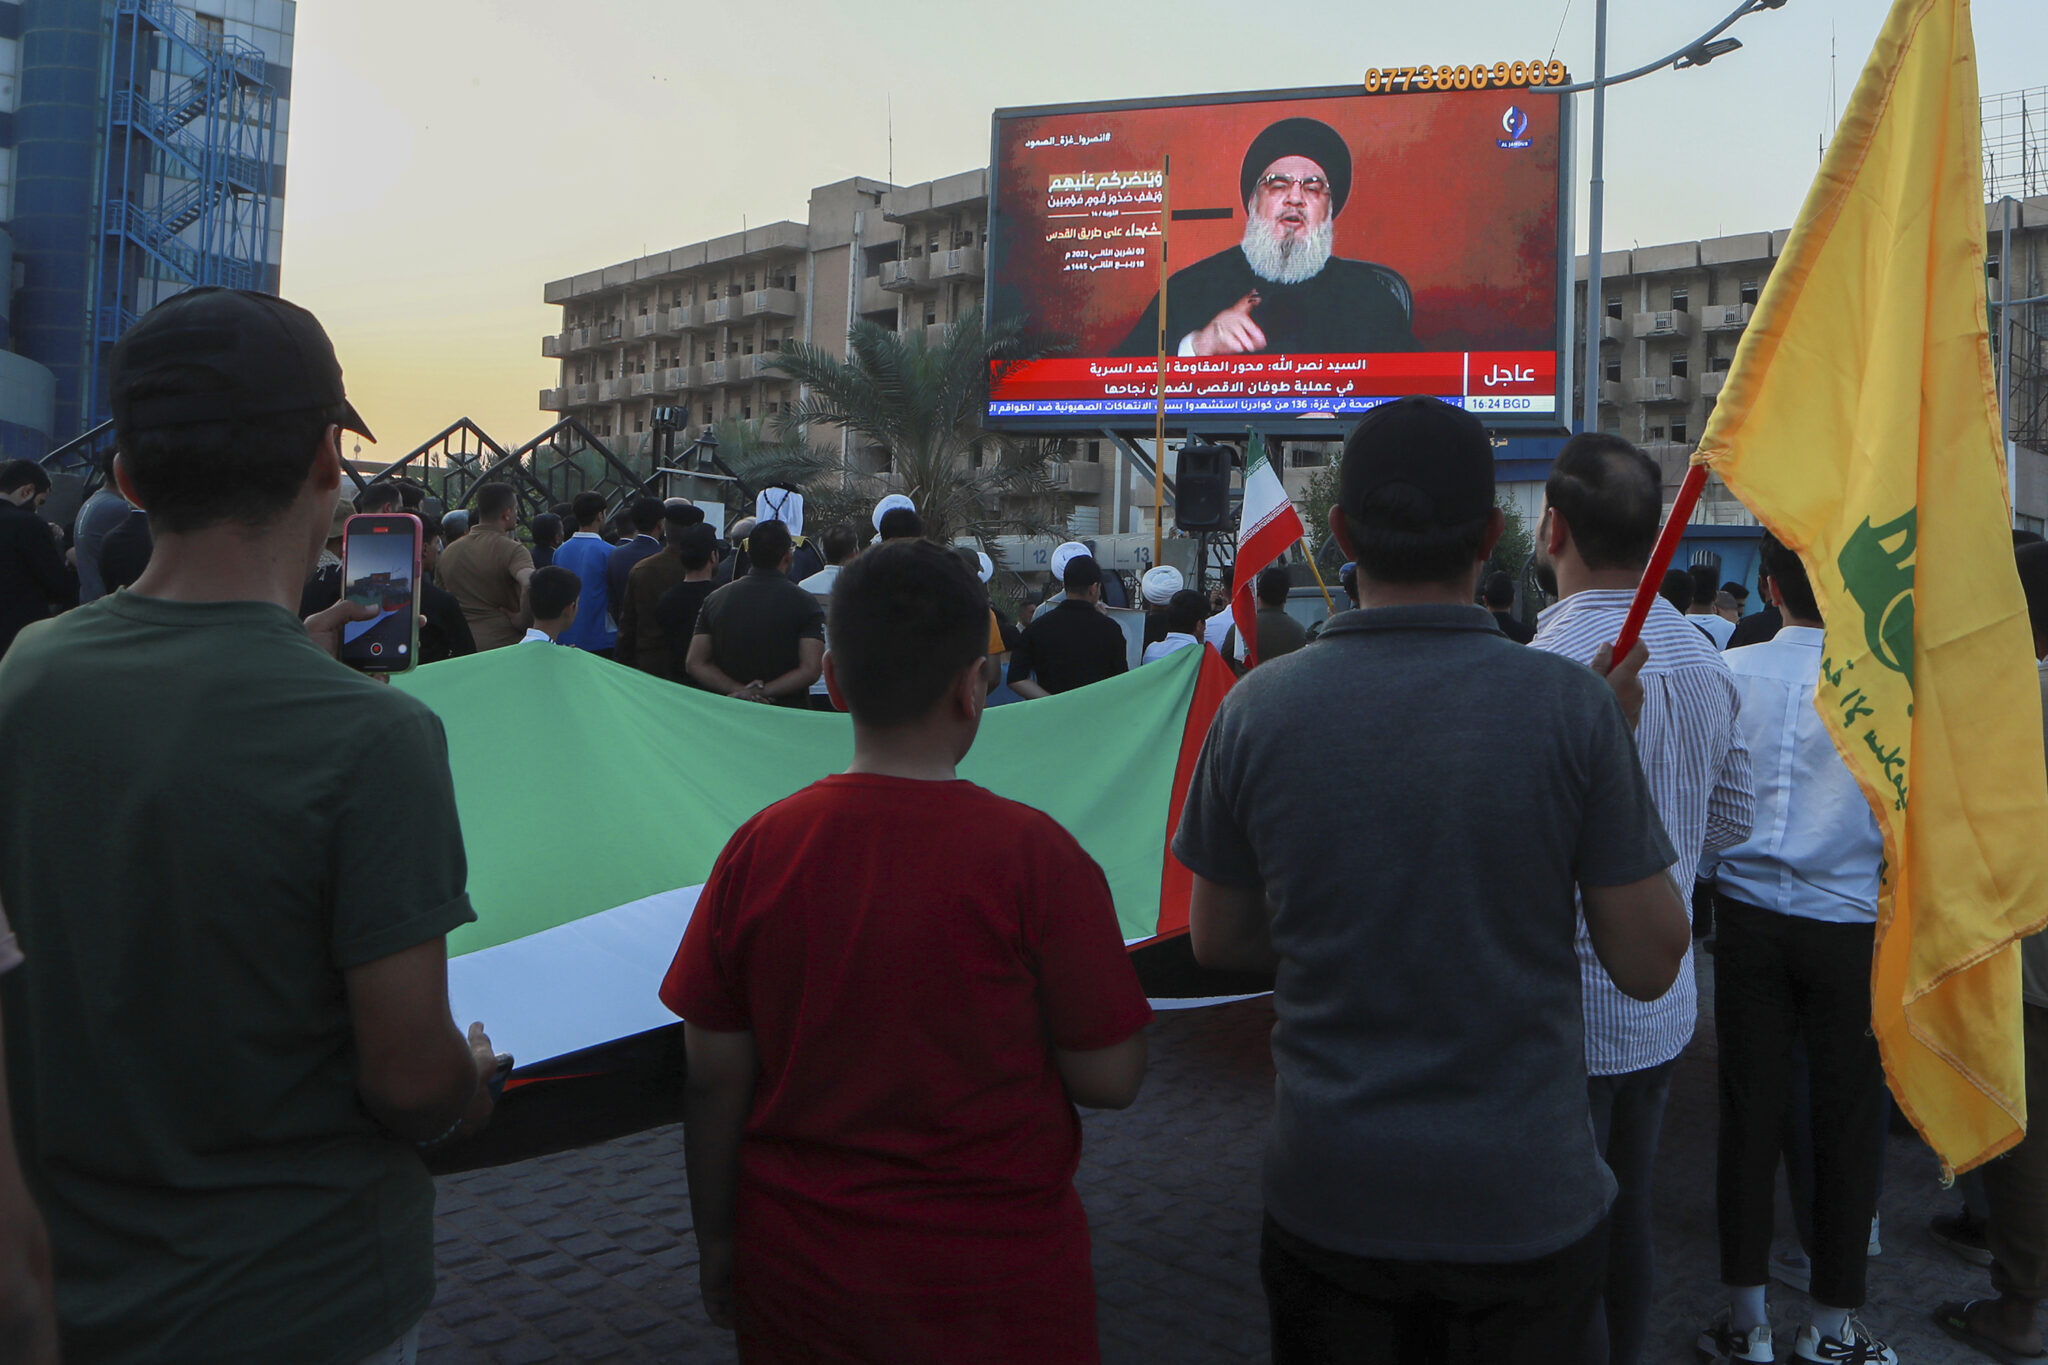 Обращение Хасана Насраллы 3 ноября транслируется на демонстрации в поддержку Палестины в Ираке. Фото Nabil al-Jurani / AP / Scanpix / LETA.